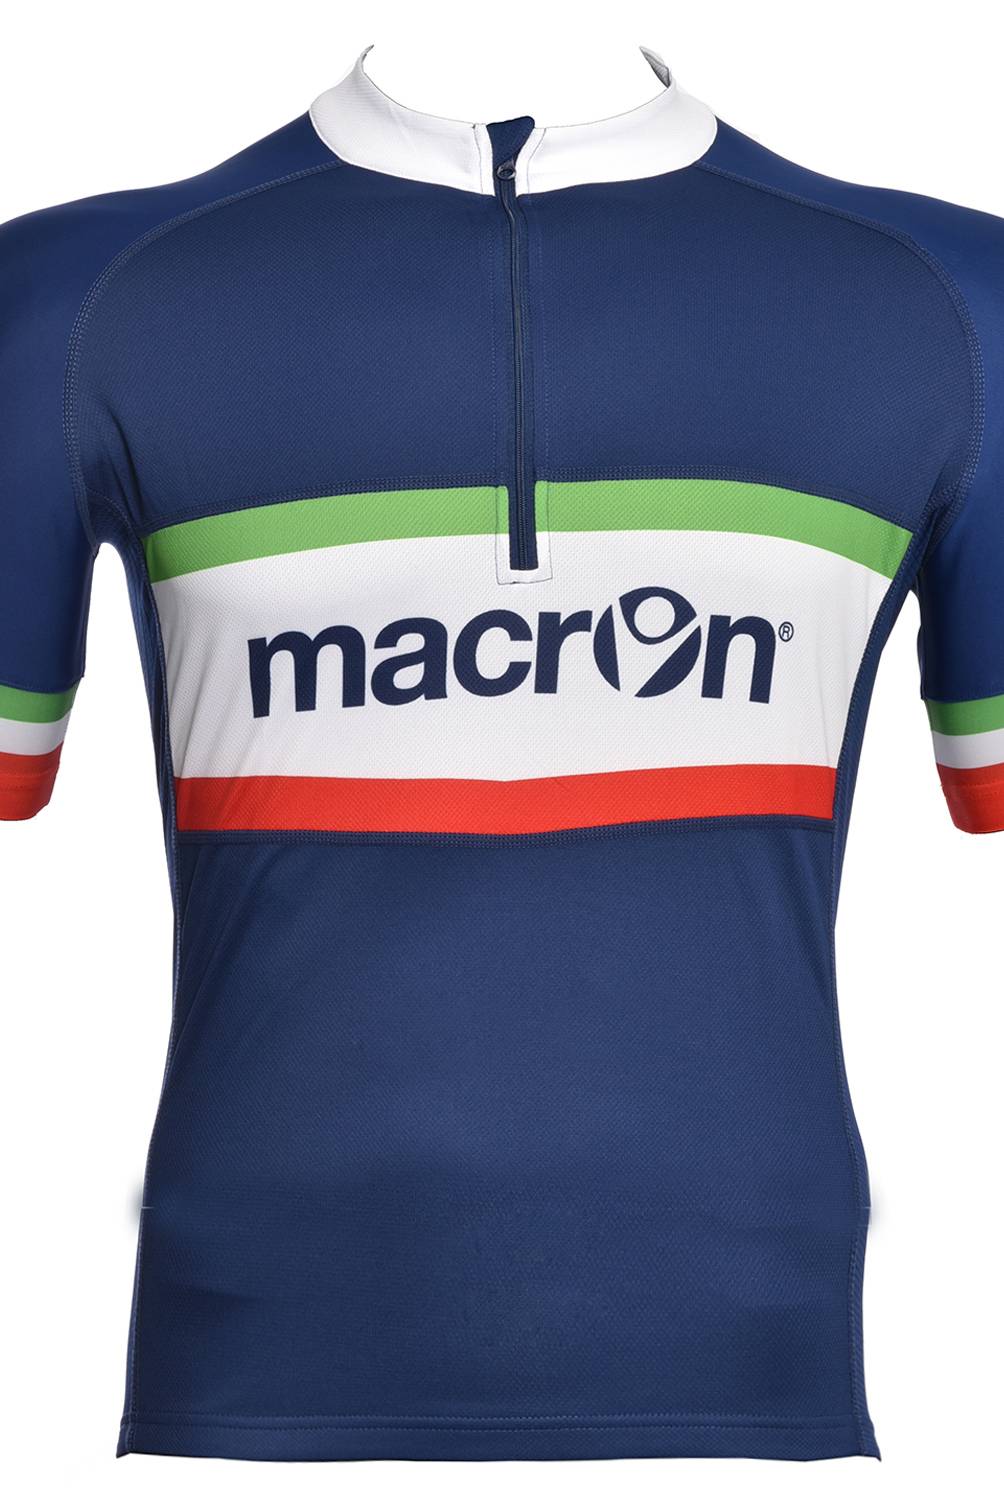 MACRON - Macron Cascos Hombre Ciclismo